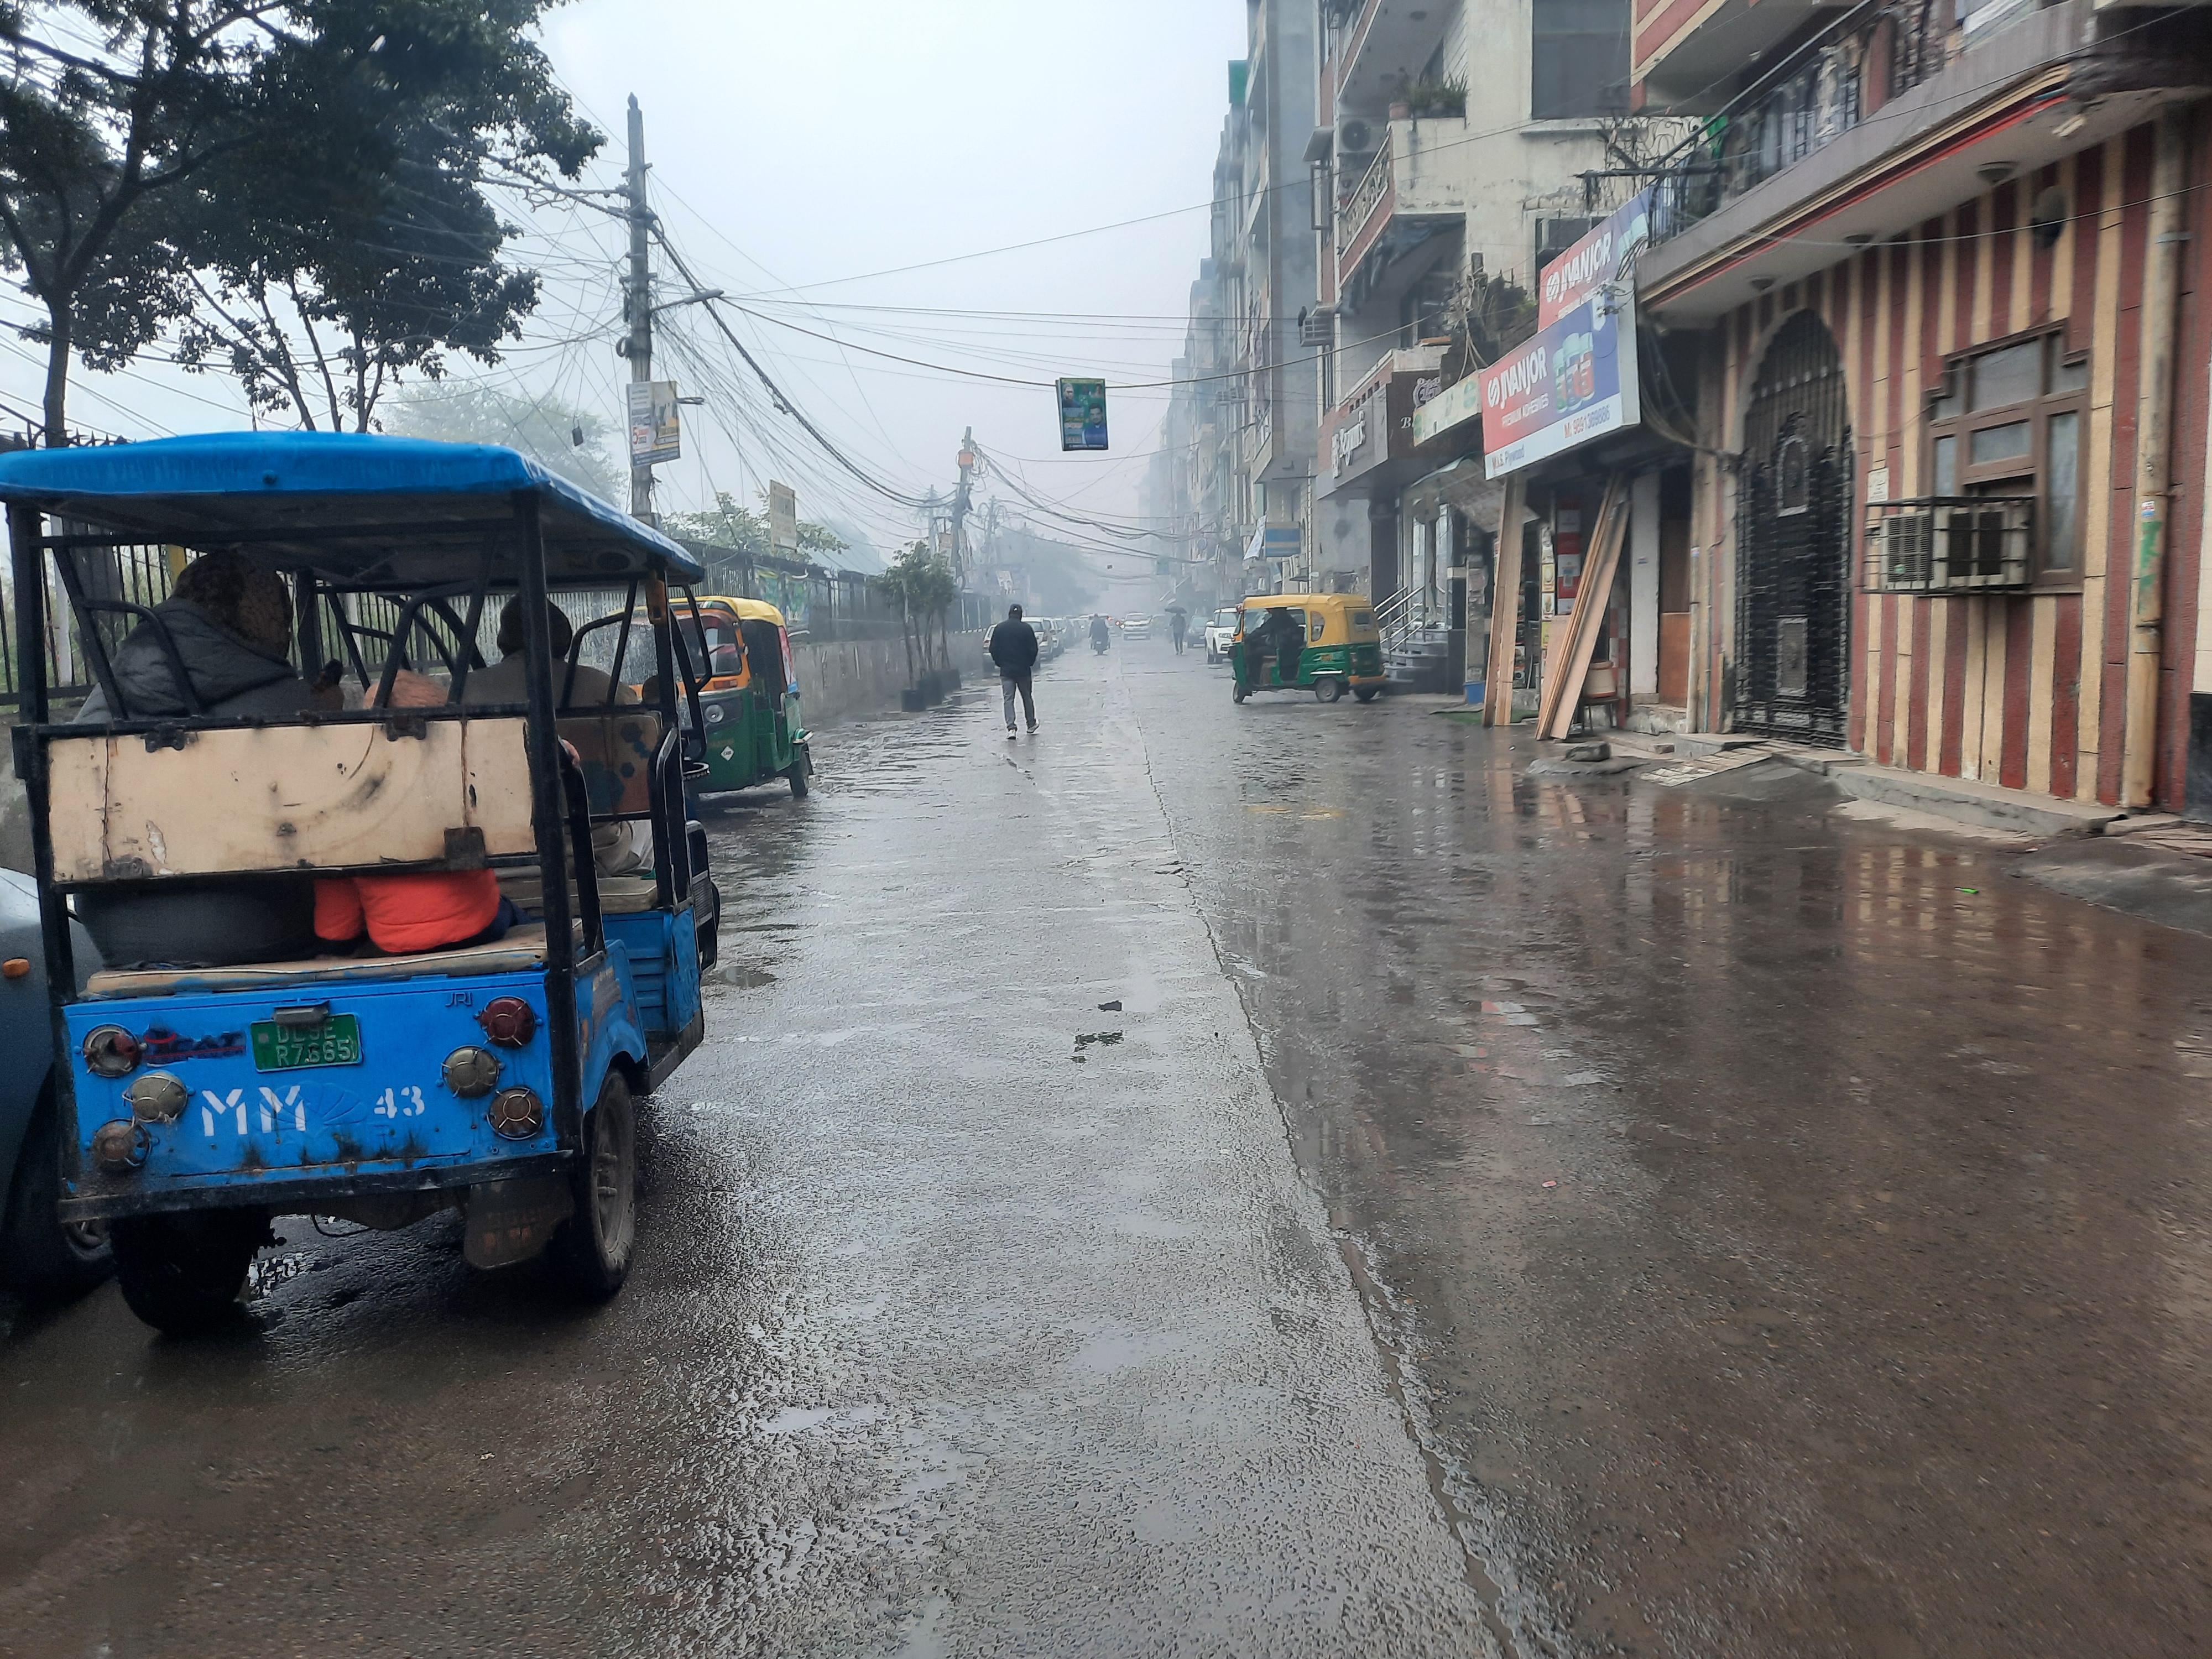 دہلی میں ہلکی بارش، ہوا کا معیار’انتہائی خراب‘ زمرے میں